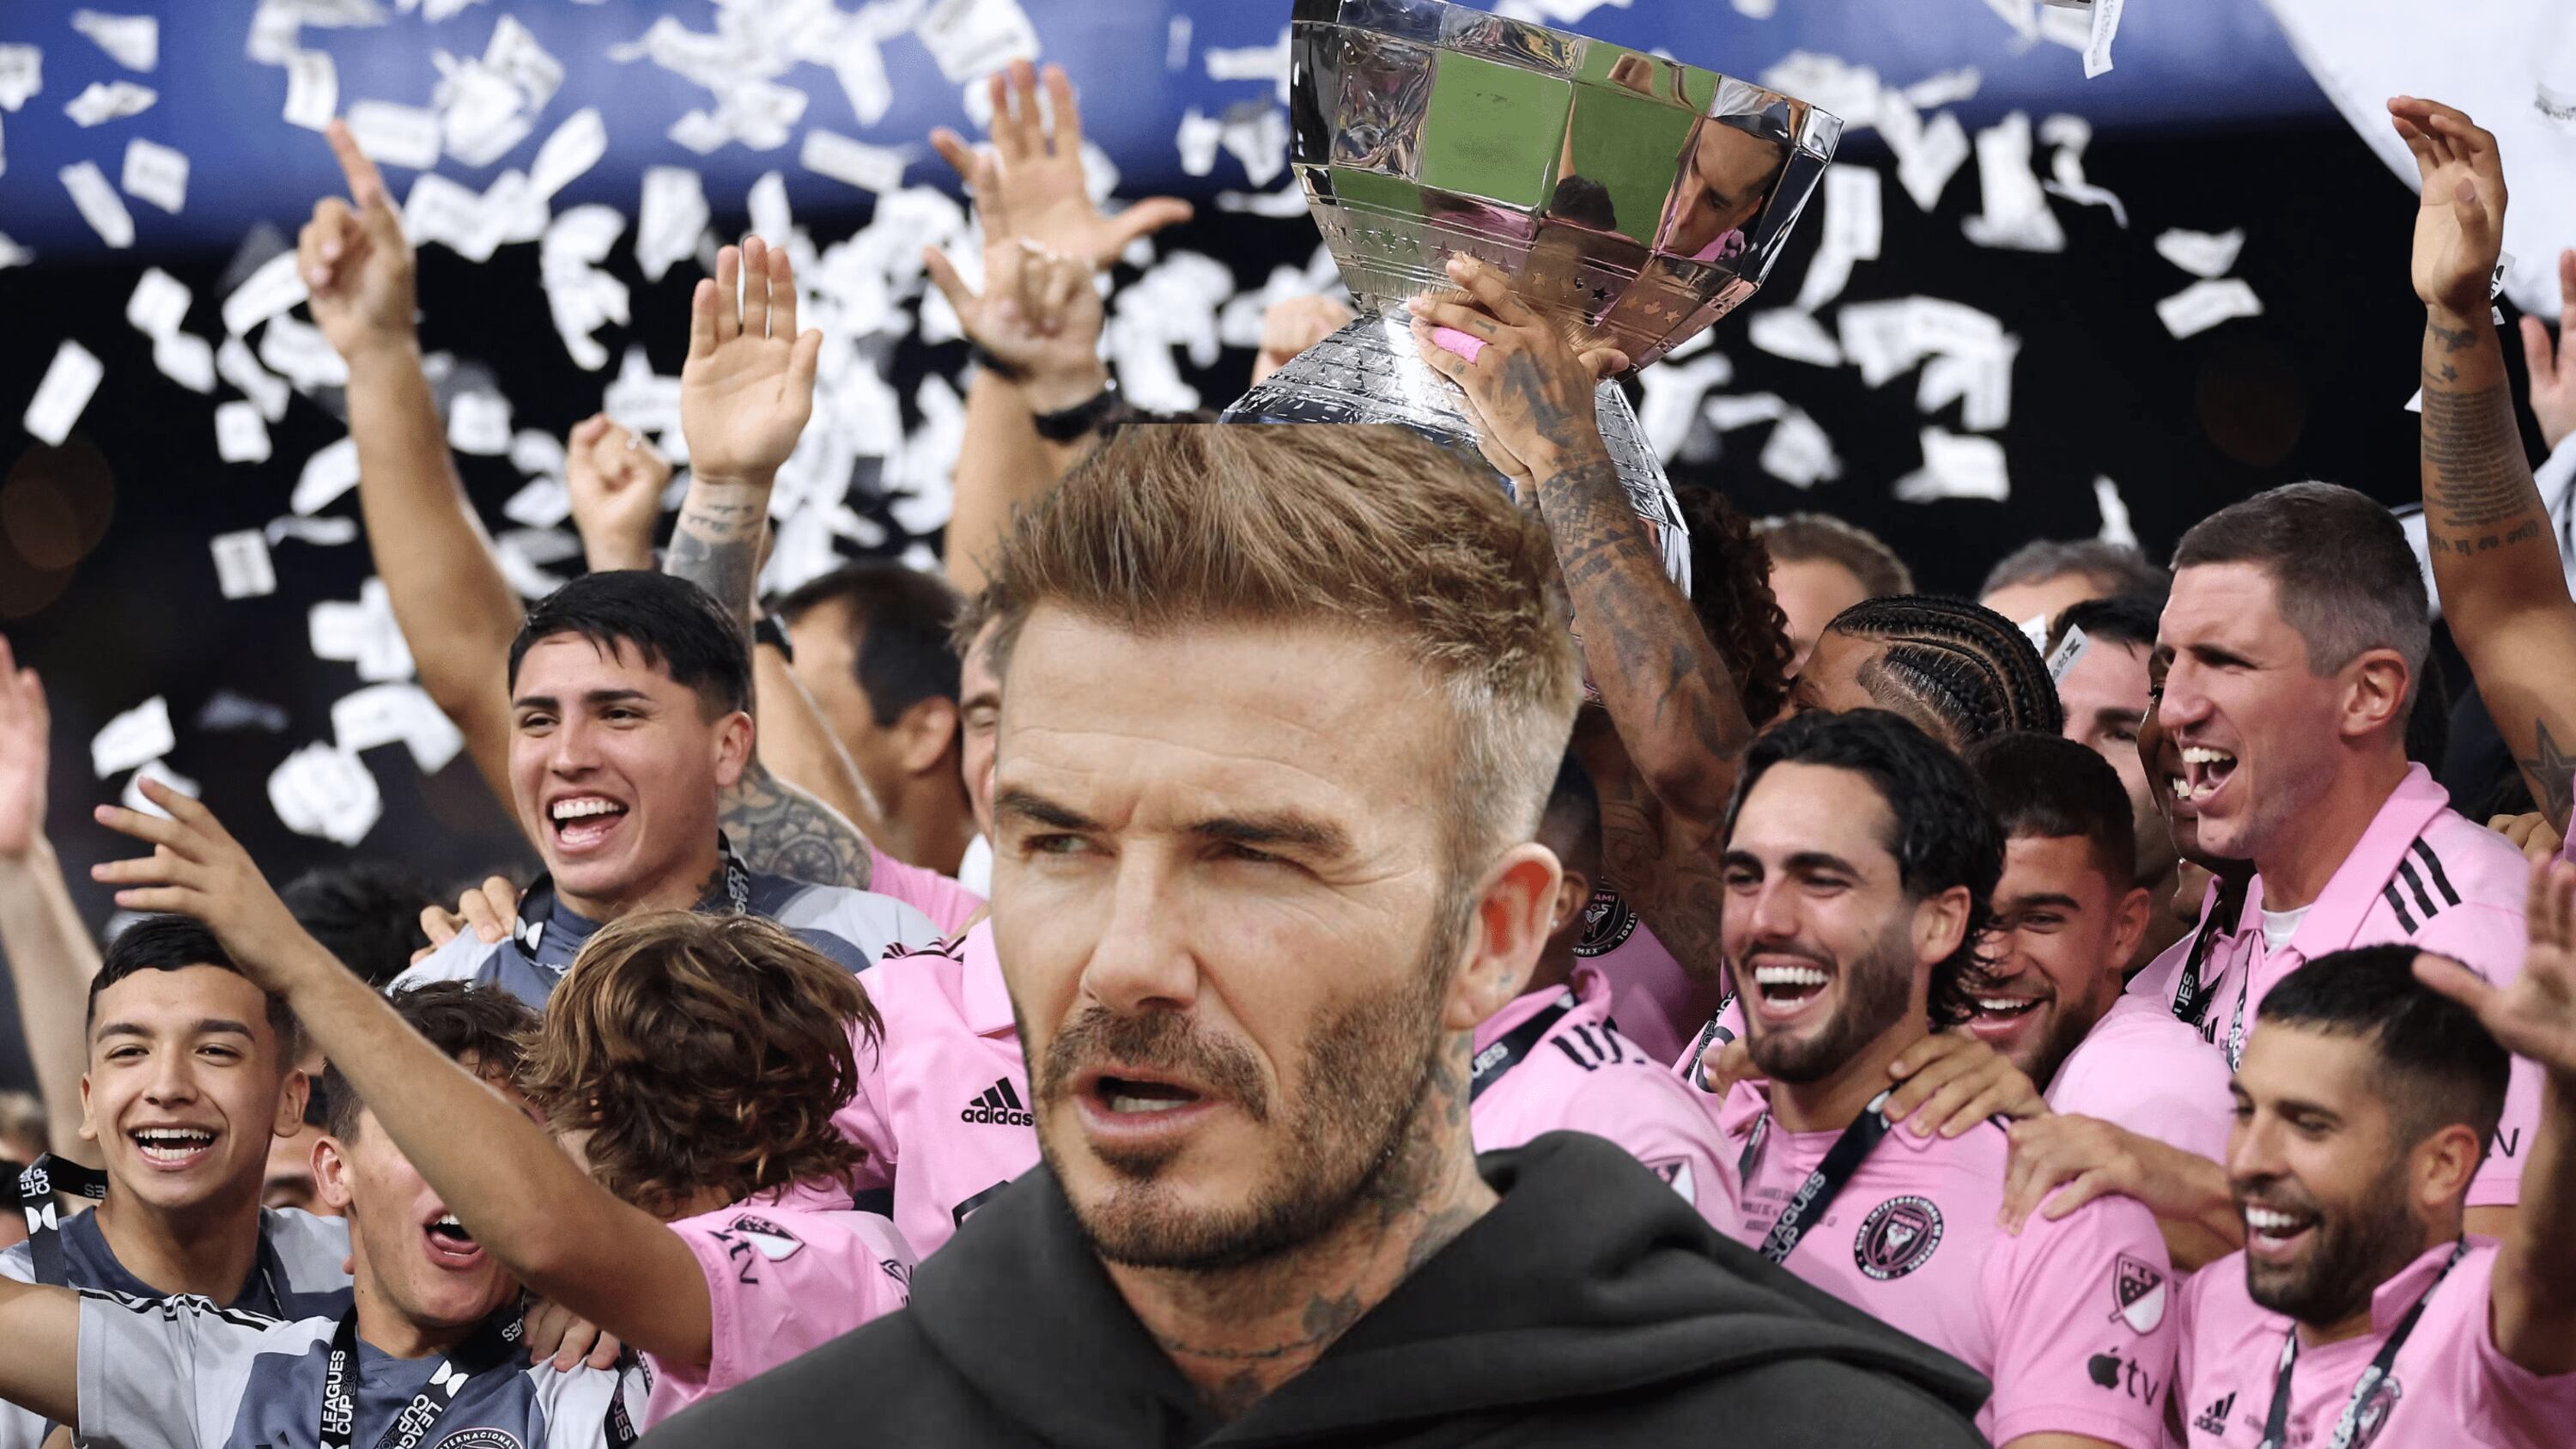 El incómodo momento que vivió Beckham en Estados Unidos antes de campeonar en Inter